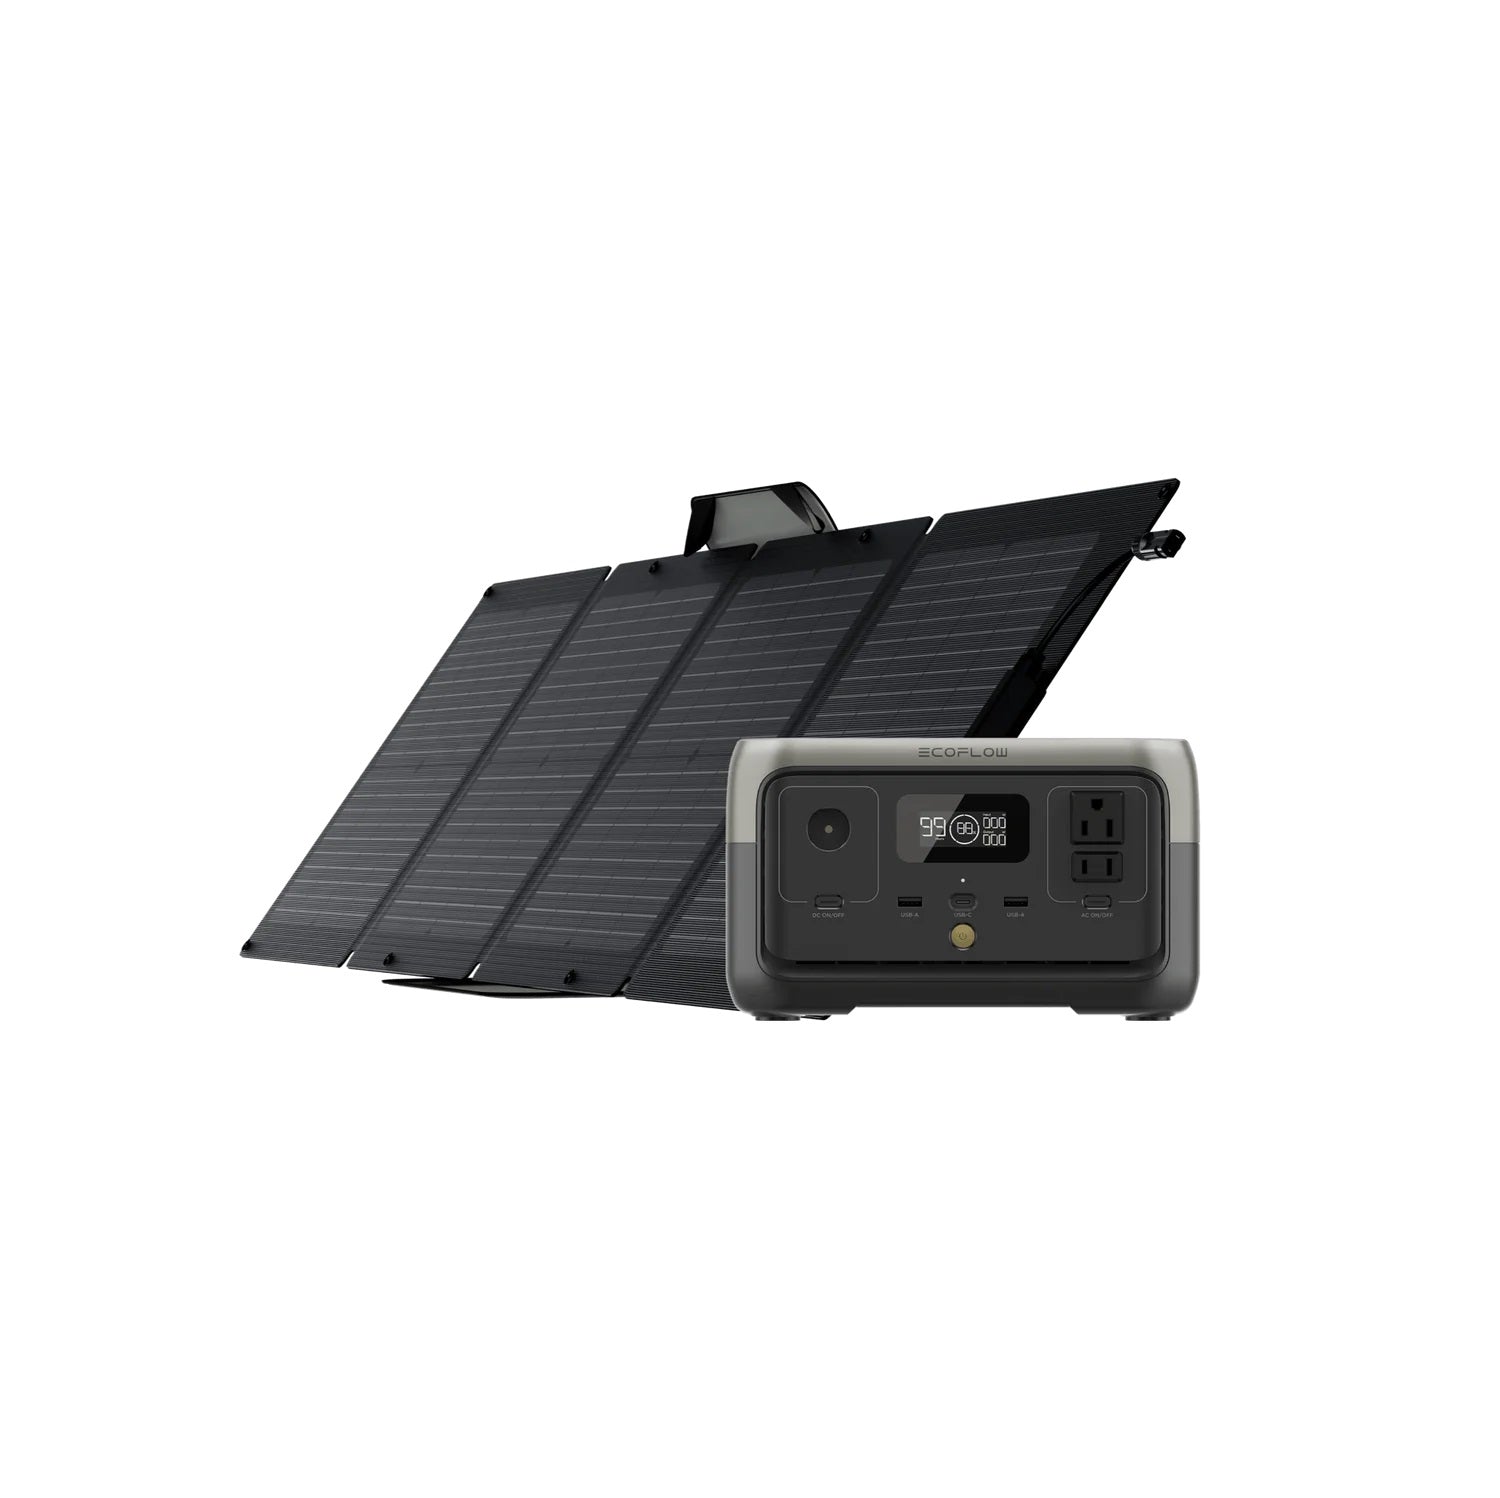 Ecoflow River 2 110W Portable Solar Panel Bundle